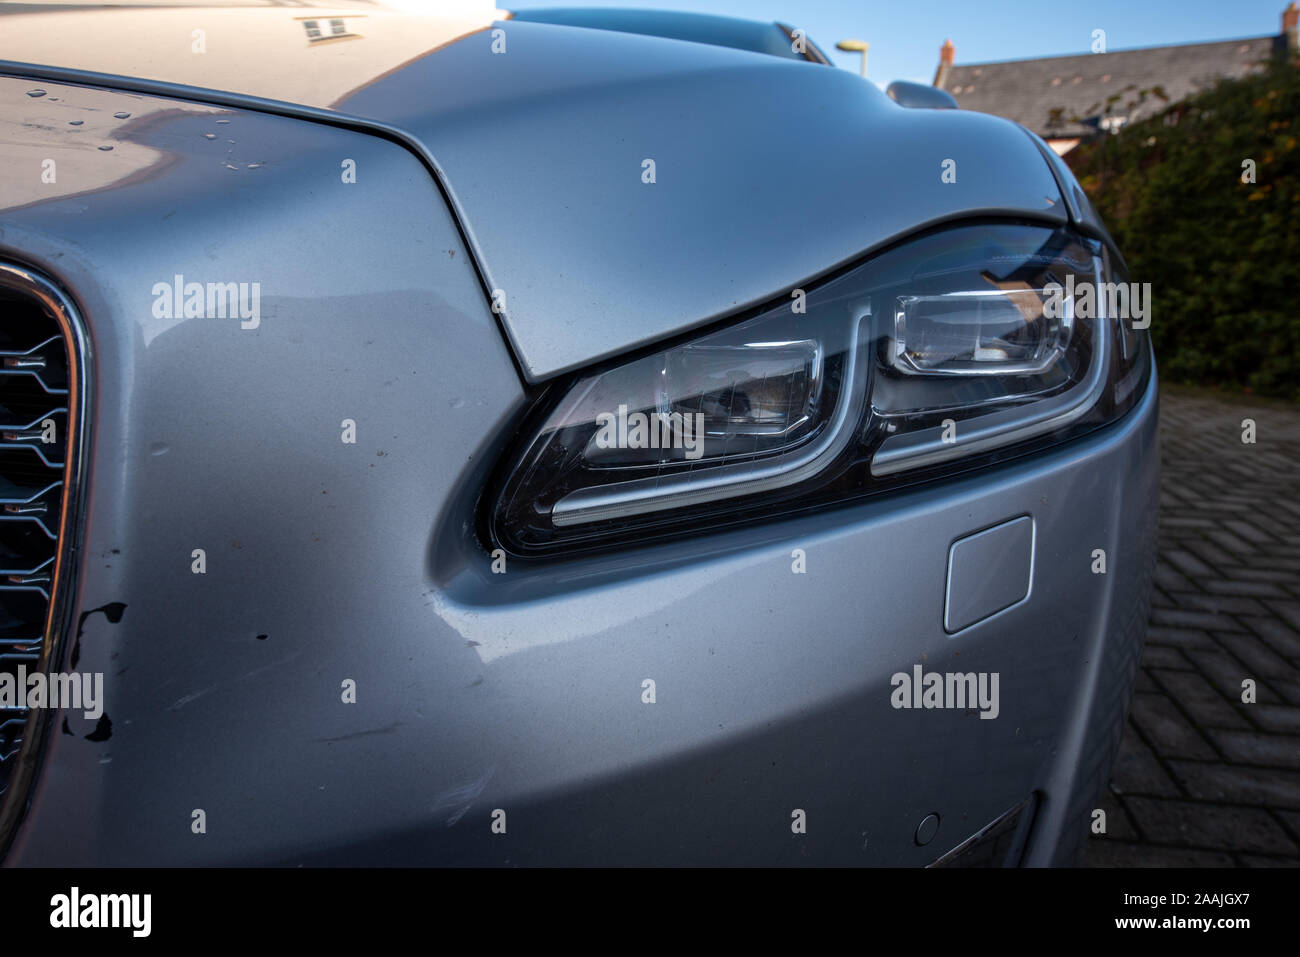 Accidente de automóvil: Daños y cerrar detalles, Jaguar de plata. Accidente de tráfico. Metal y plástico triturado. Foto de stock